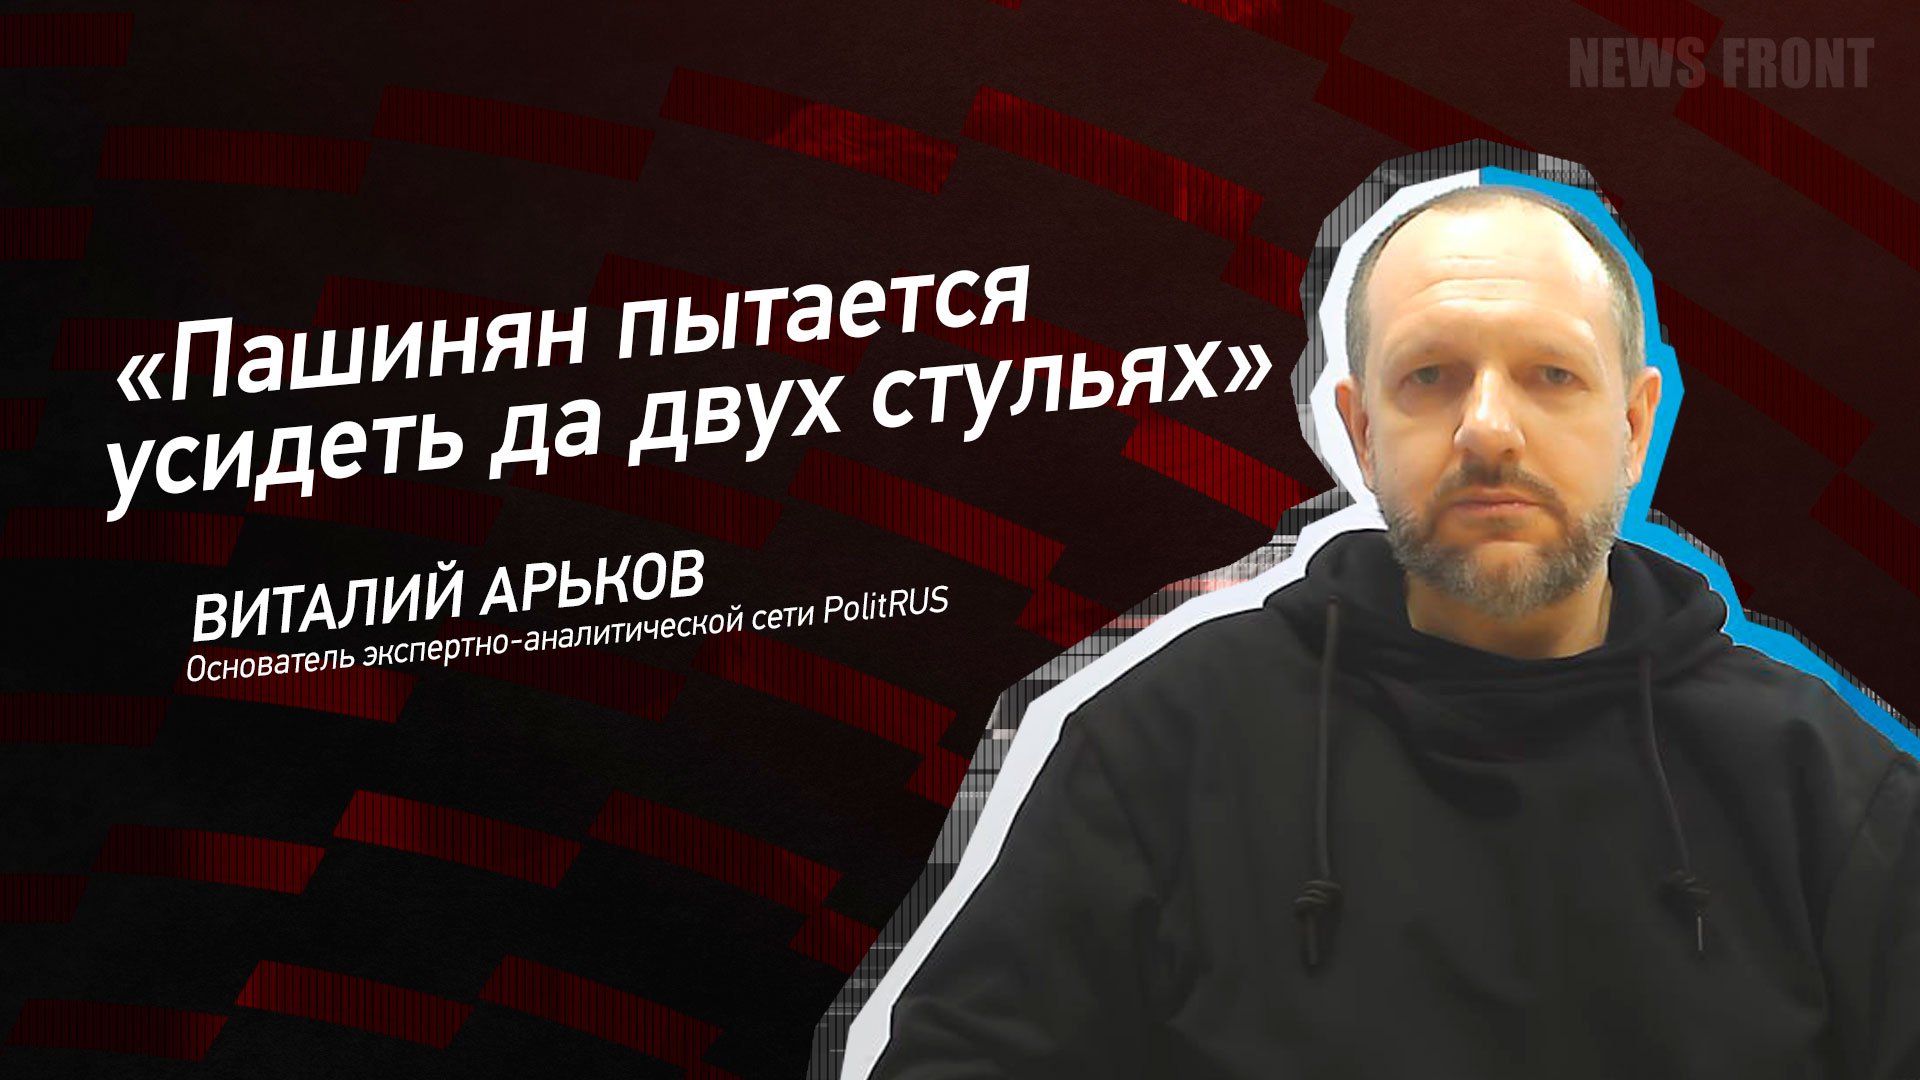 "Пашинян пытается усидеть да двух стульях" - Виталий Арьков